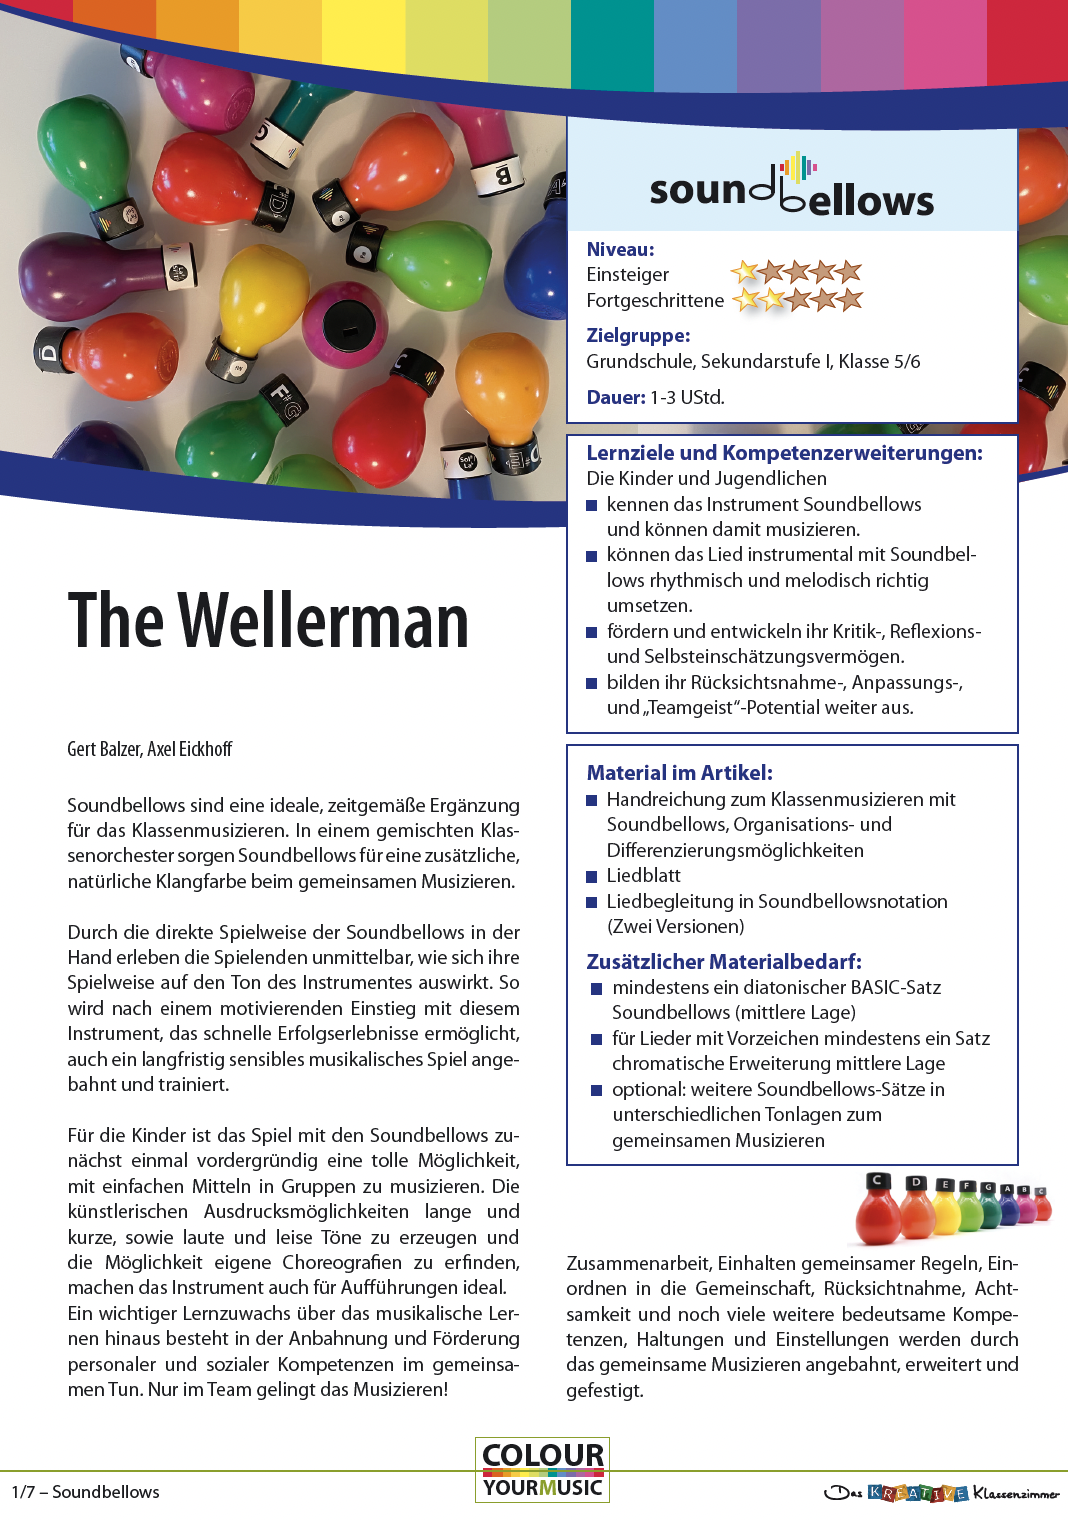 The Wellerman (Soon may the Wellerman come) - Klassenmusizieren